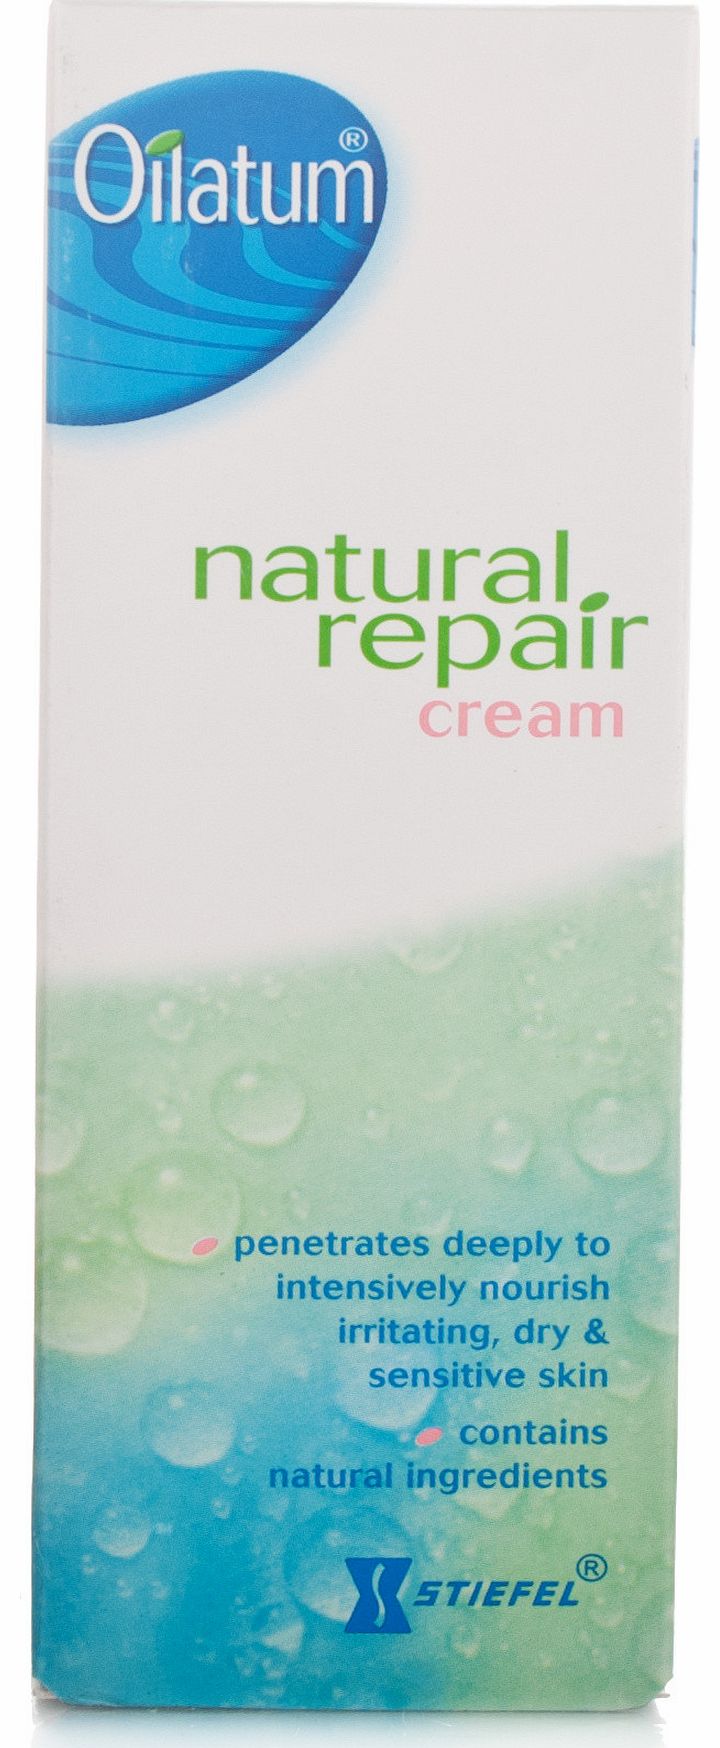 Natural Repair Cream